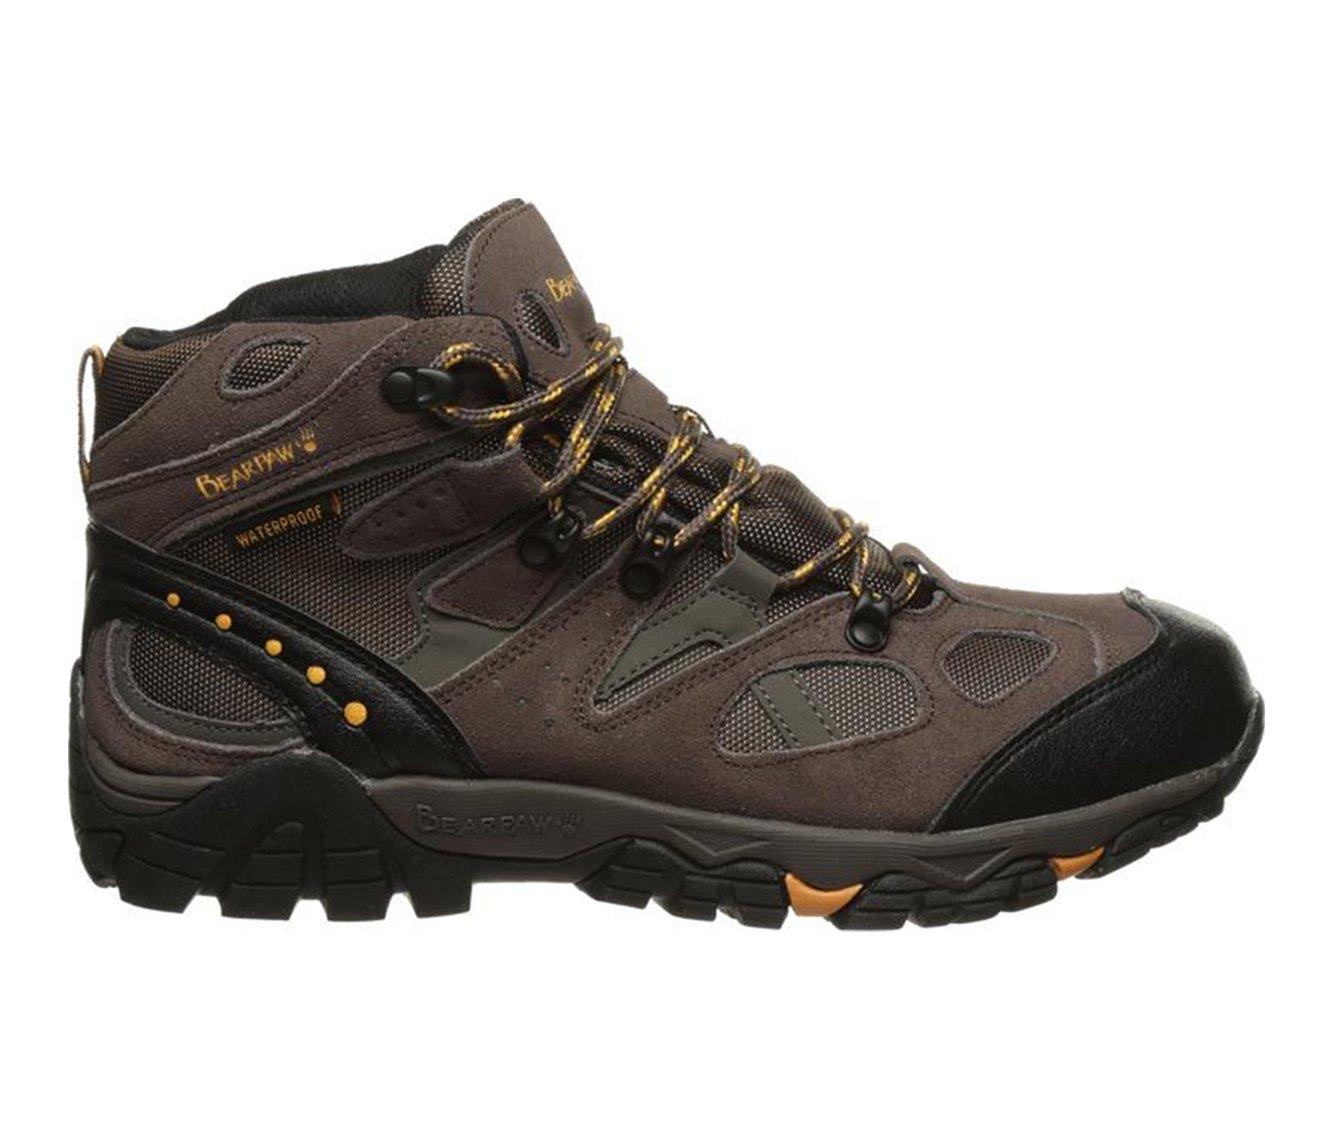 Men's Bearpaw Brock Hiking Boots